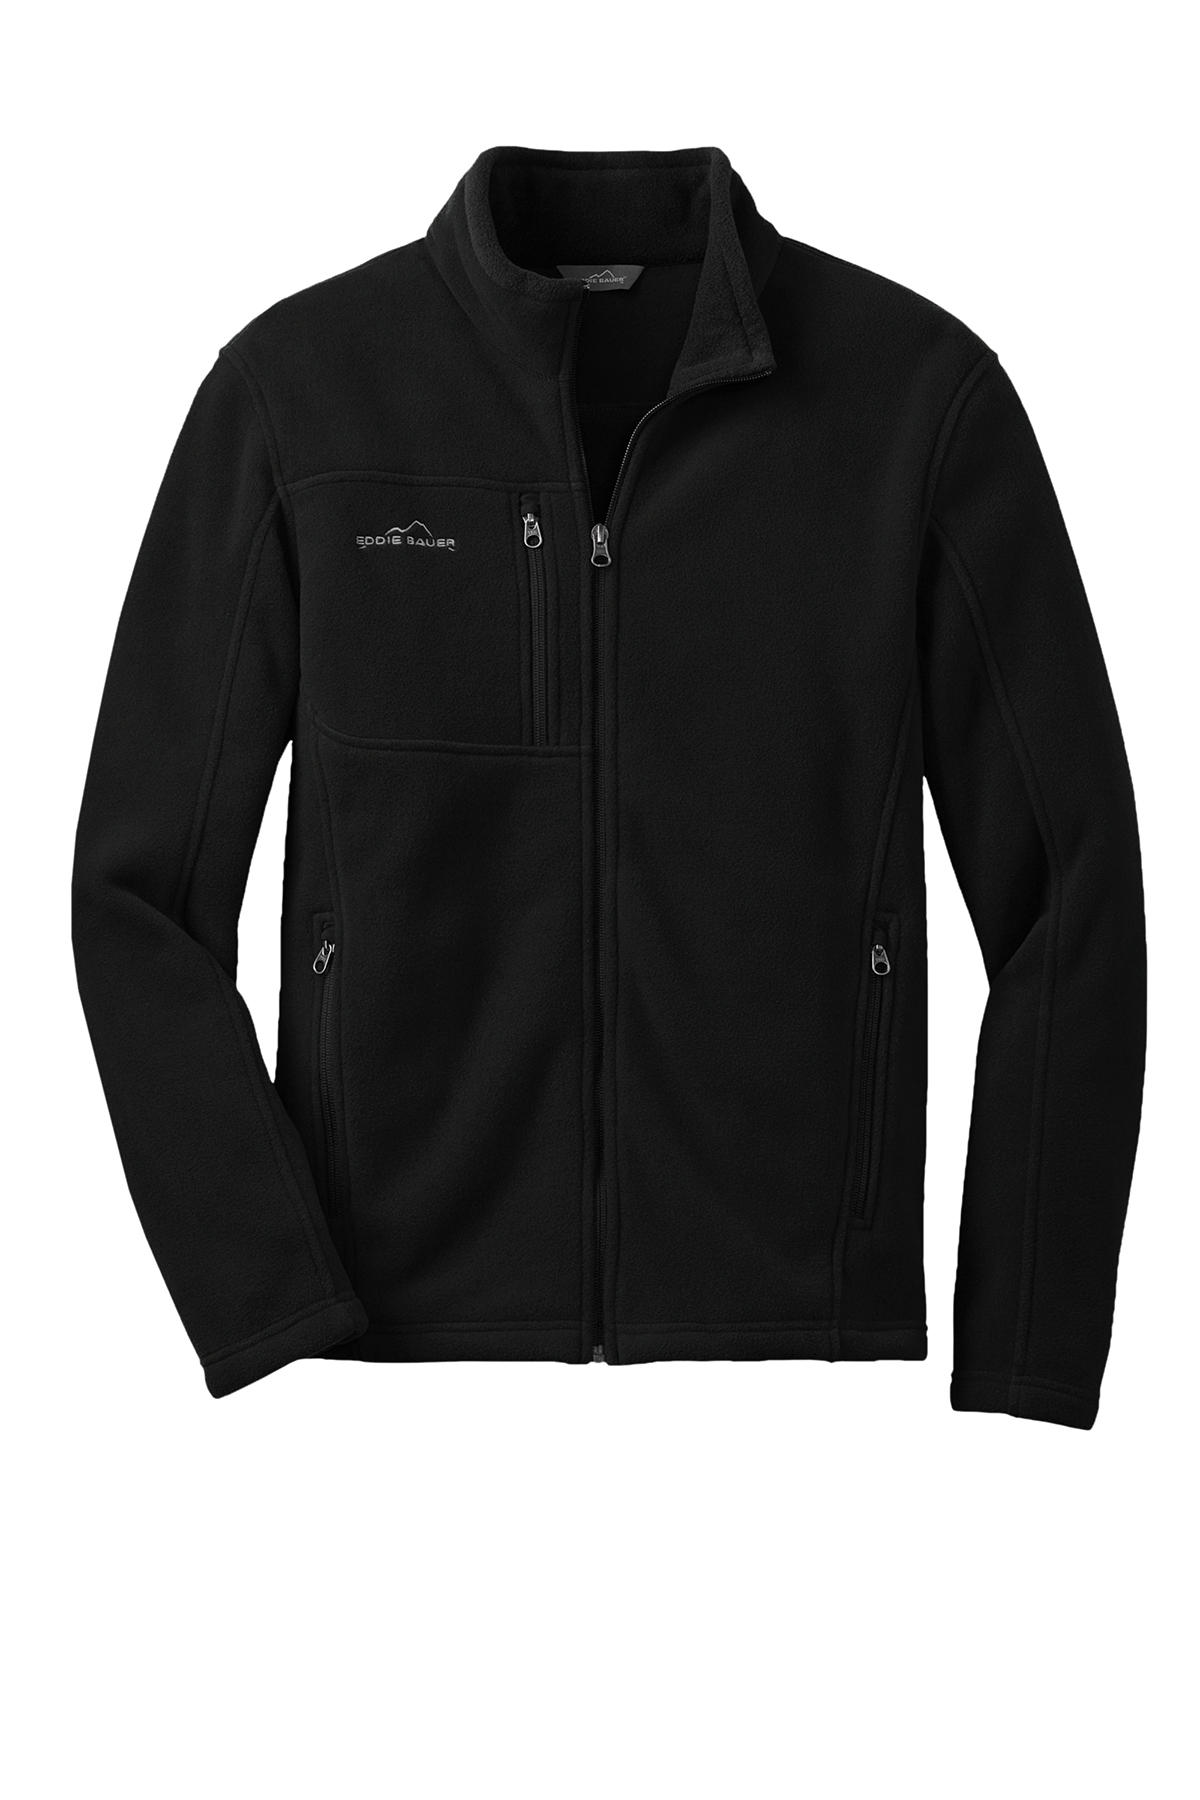 Eddie Bauer - Full-Zip Fleece Jacket | Product | SanMar